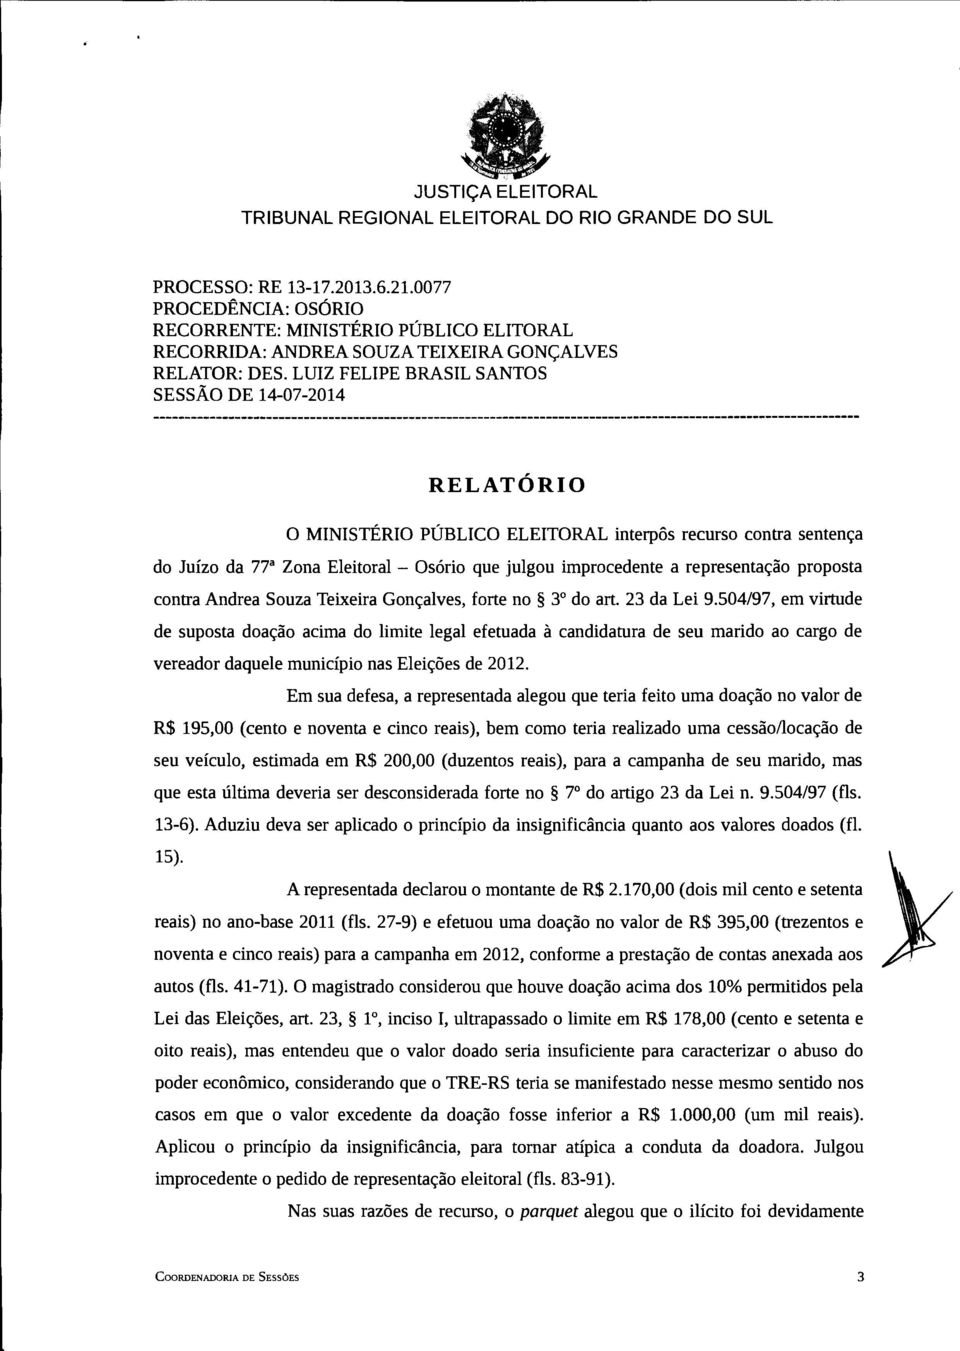 representação proposta contra Andrea Souza Teixeira Gonçalves, forte no 3 do art. 23 da Lei 9.